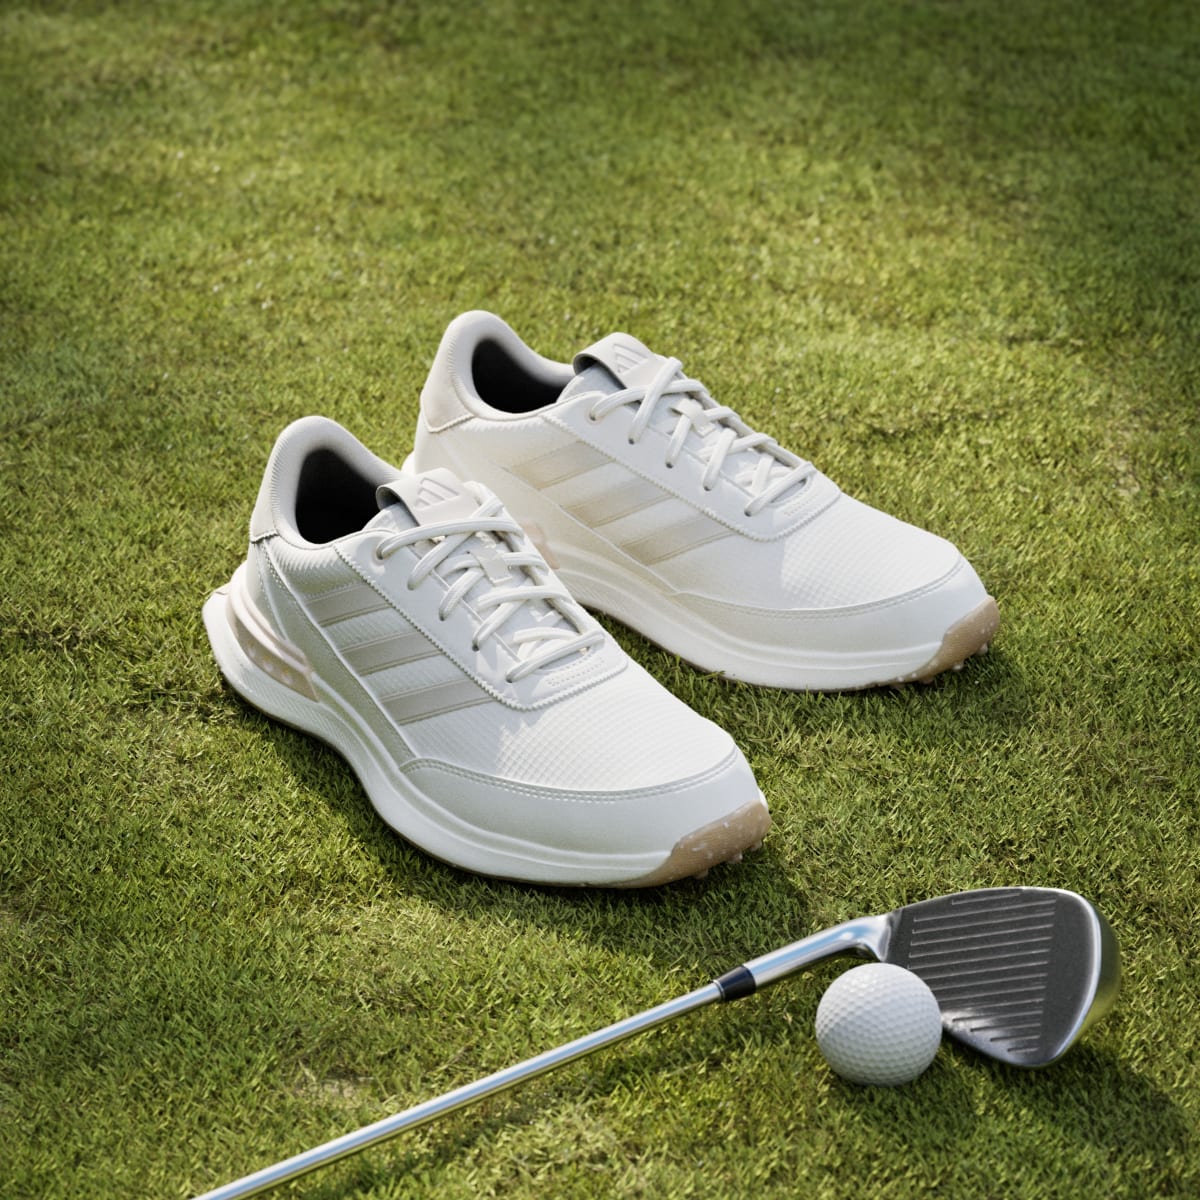 Adidas S2G 24 Spikeless Golf Shoes. 4